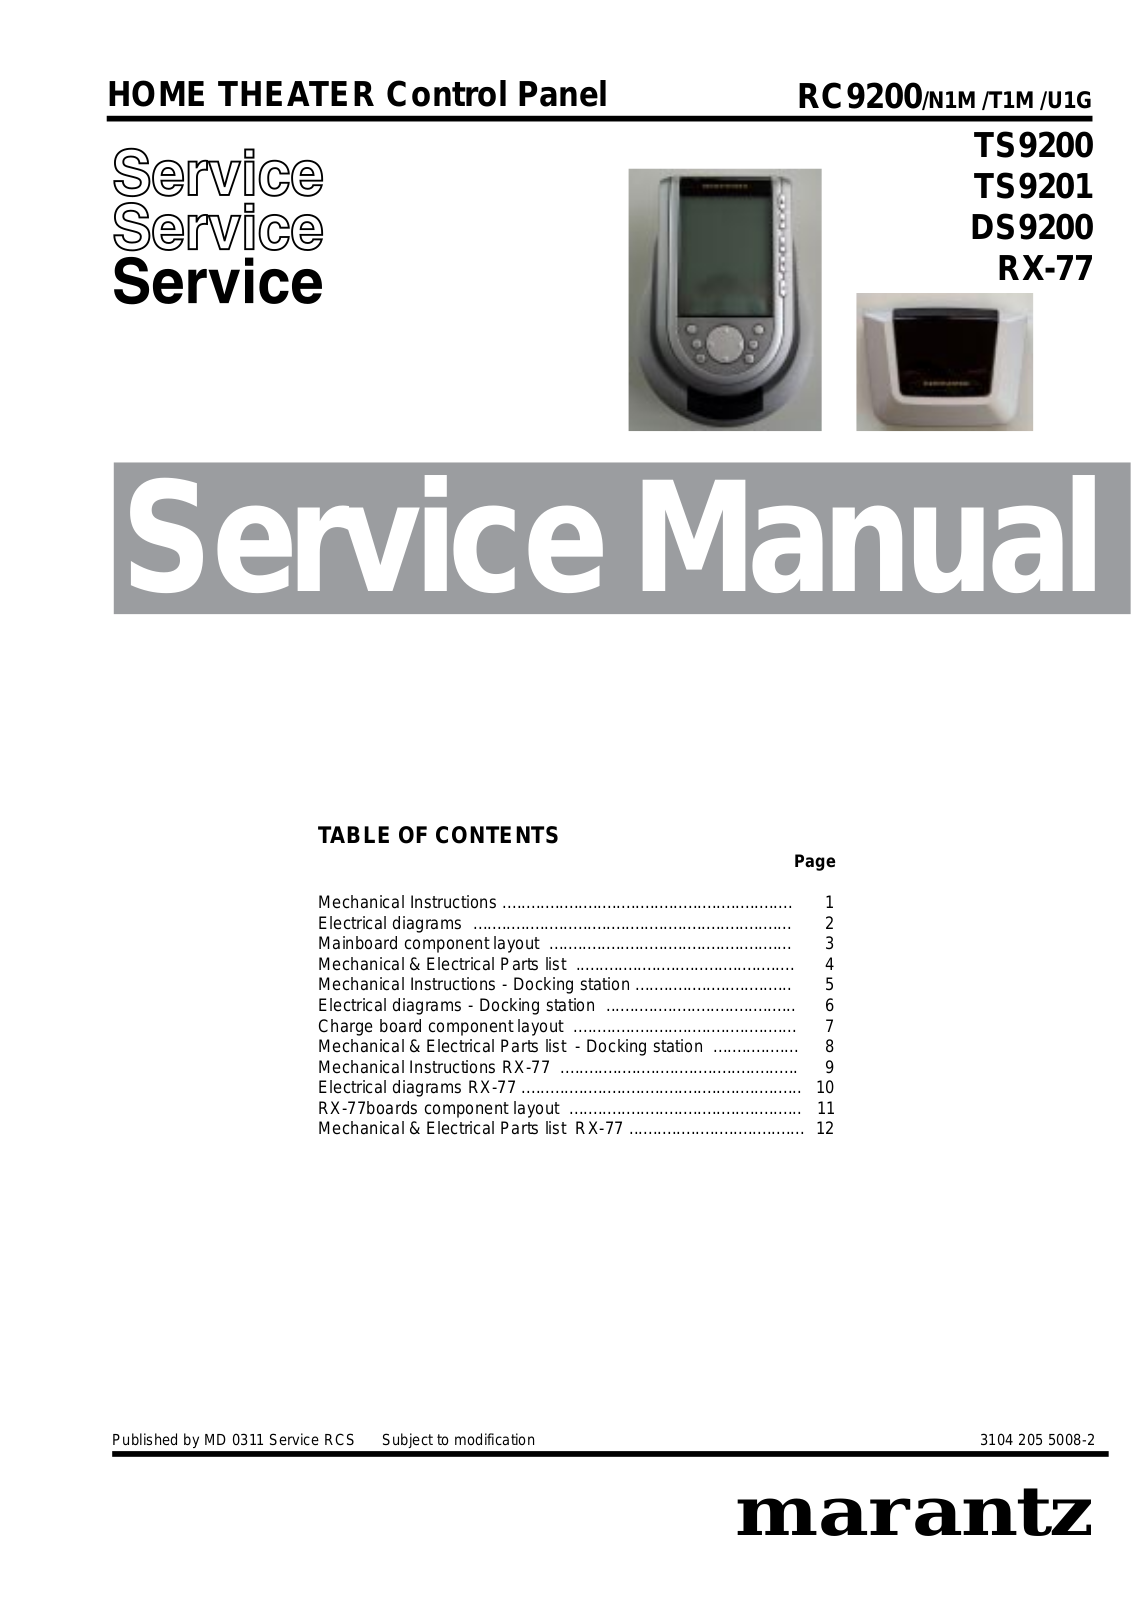 Marantz TS-9200, RX-77, RC-9200, DS-9200 Service Manual